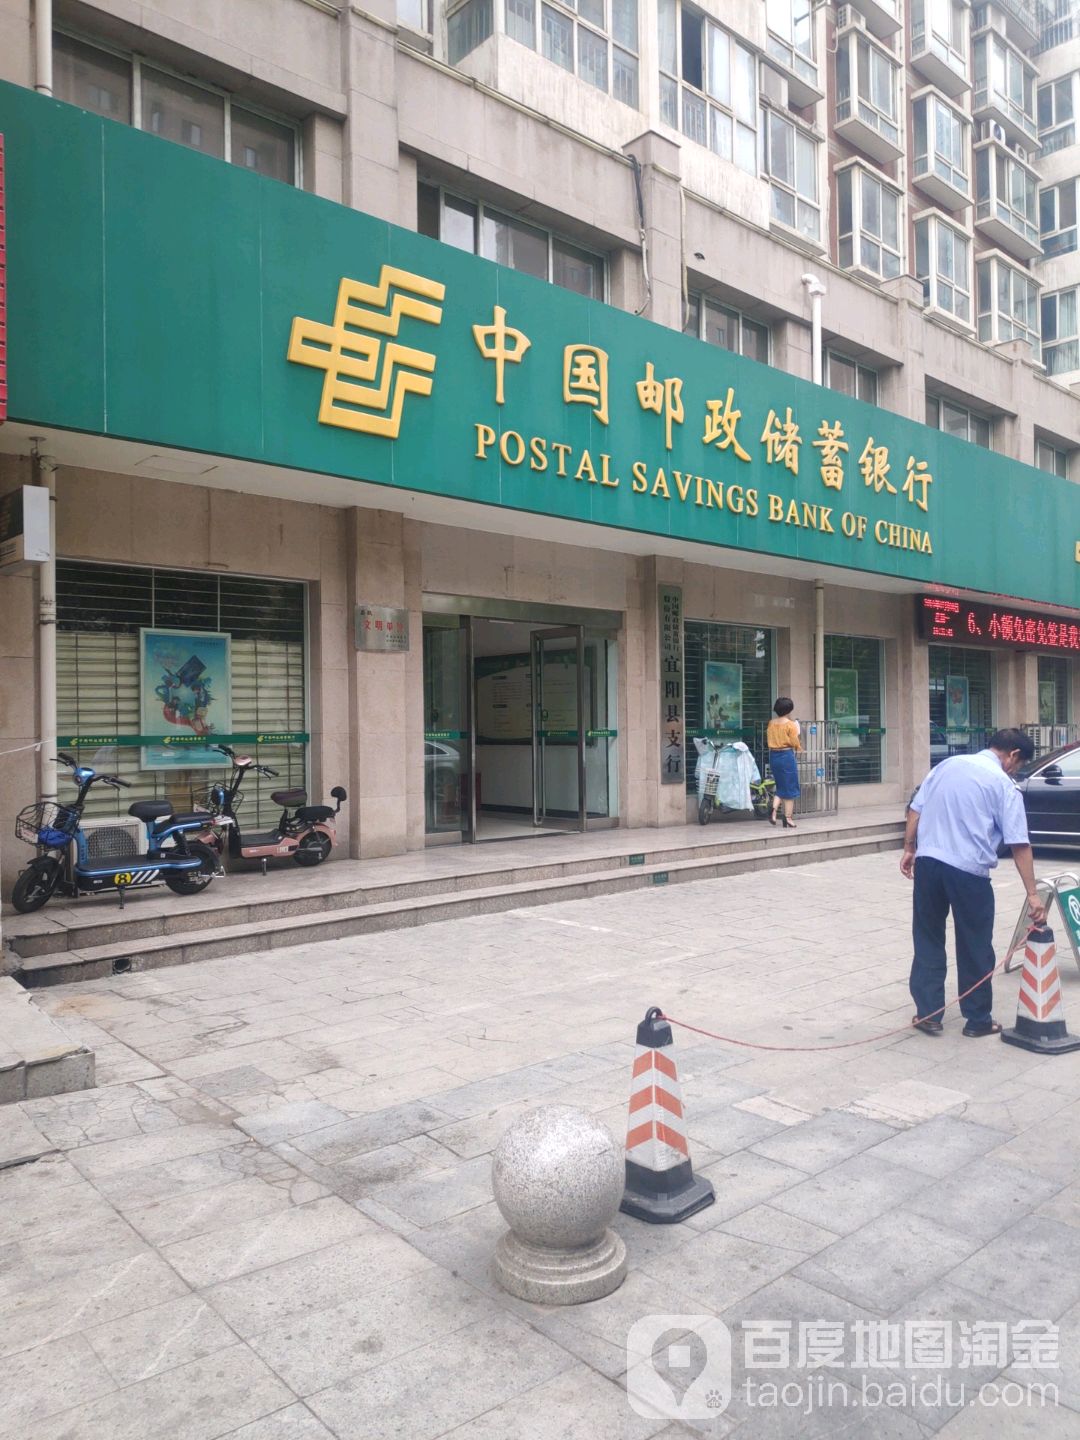 中國郵政儲蓄銀行(宜陽縣信貸營業廳)